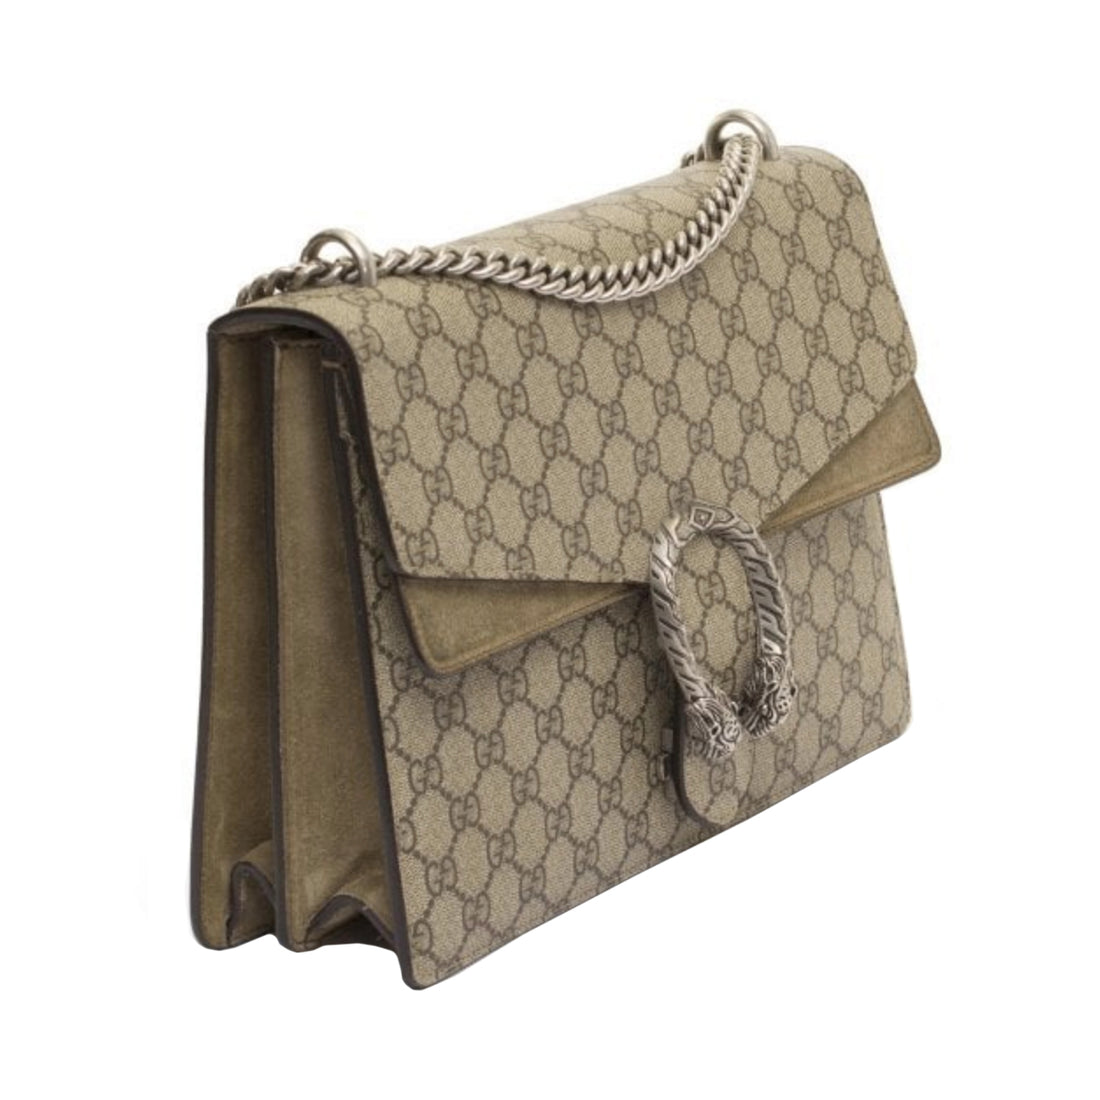 Gucci Dionysus Medium Shoulder Bag